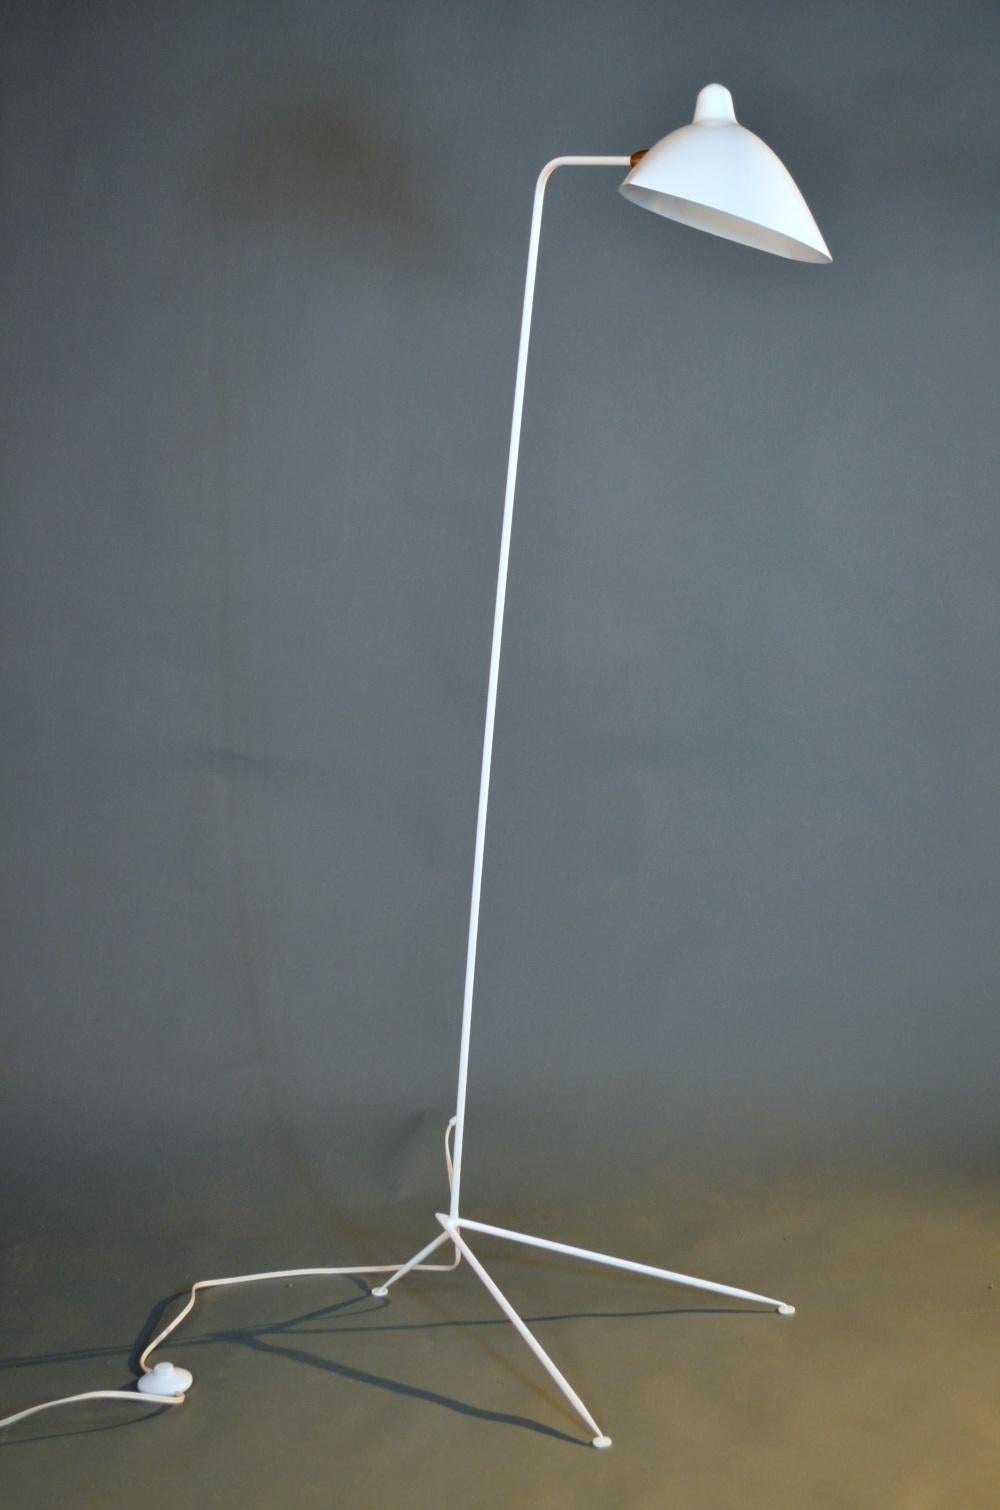 Klare, einfache Linien beschreiben die Eleganz dieser Stehleuchte von Serge Mouille. Ein langer, schlanker Arm, der von einem spitz zulaufenden dreieckigen Sockel getragen wird, ermöglicht es dem schwenkbaren Schirm, in jedem Winkel zu